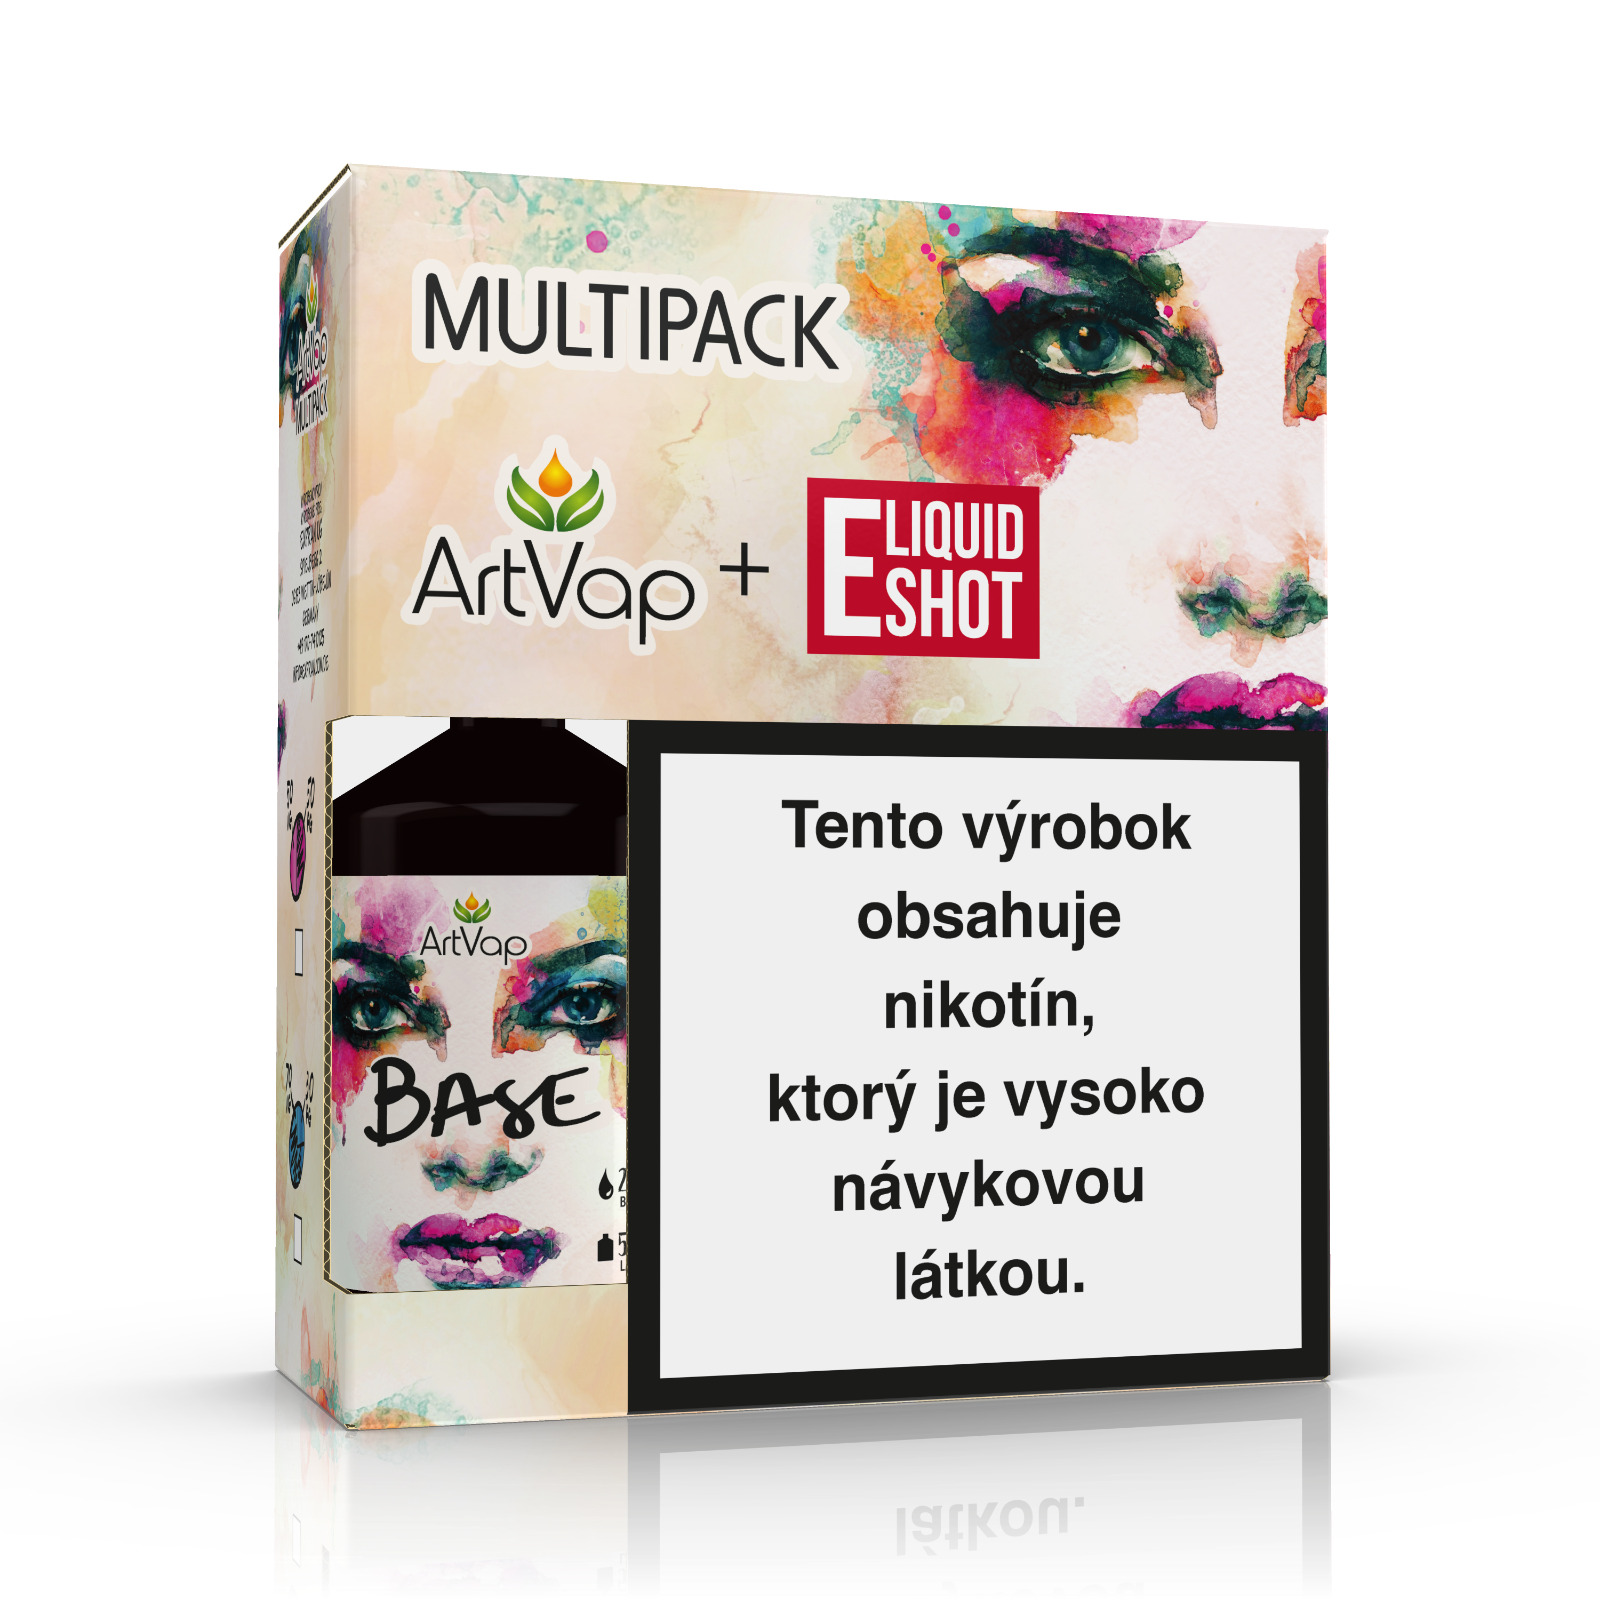 Multipack 500 ml 30PG/70VG 4 mg/ml